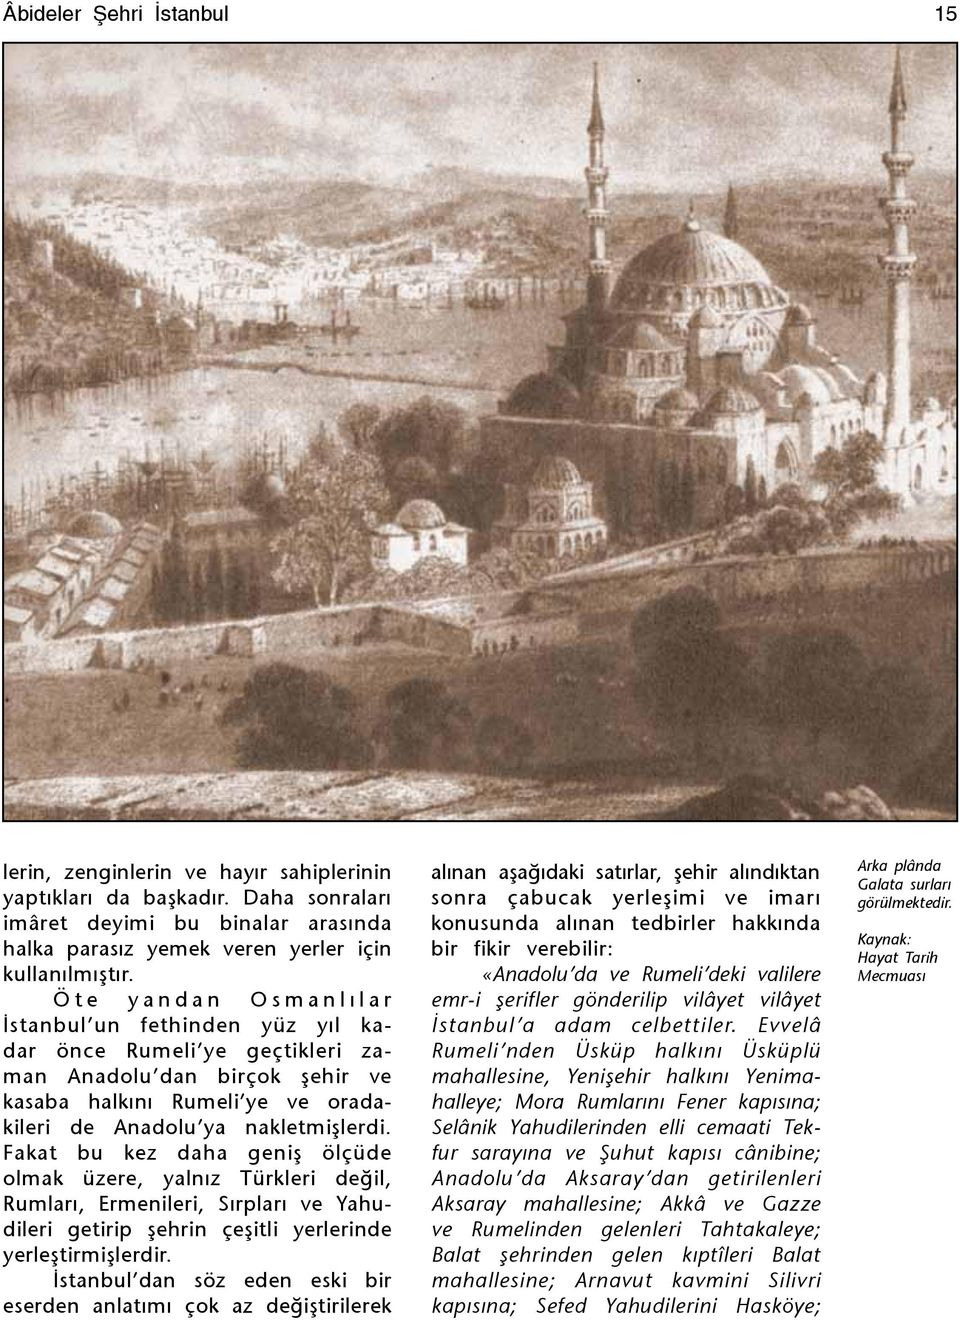 nakletmişlerdi. Fakat bu kez daha geniş ölçüde olmak üzere, yalnız Türkleri değil, Rumları, Ermenileri, Sırpları ve Yahudileri getirip şehrin çeşitli yerlerinde yerleştirmişlerdir.